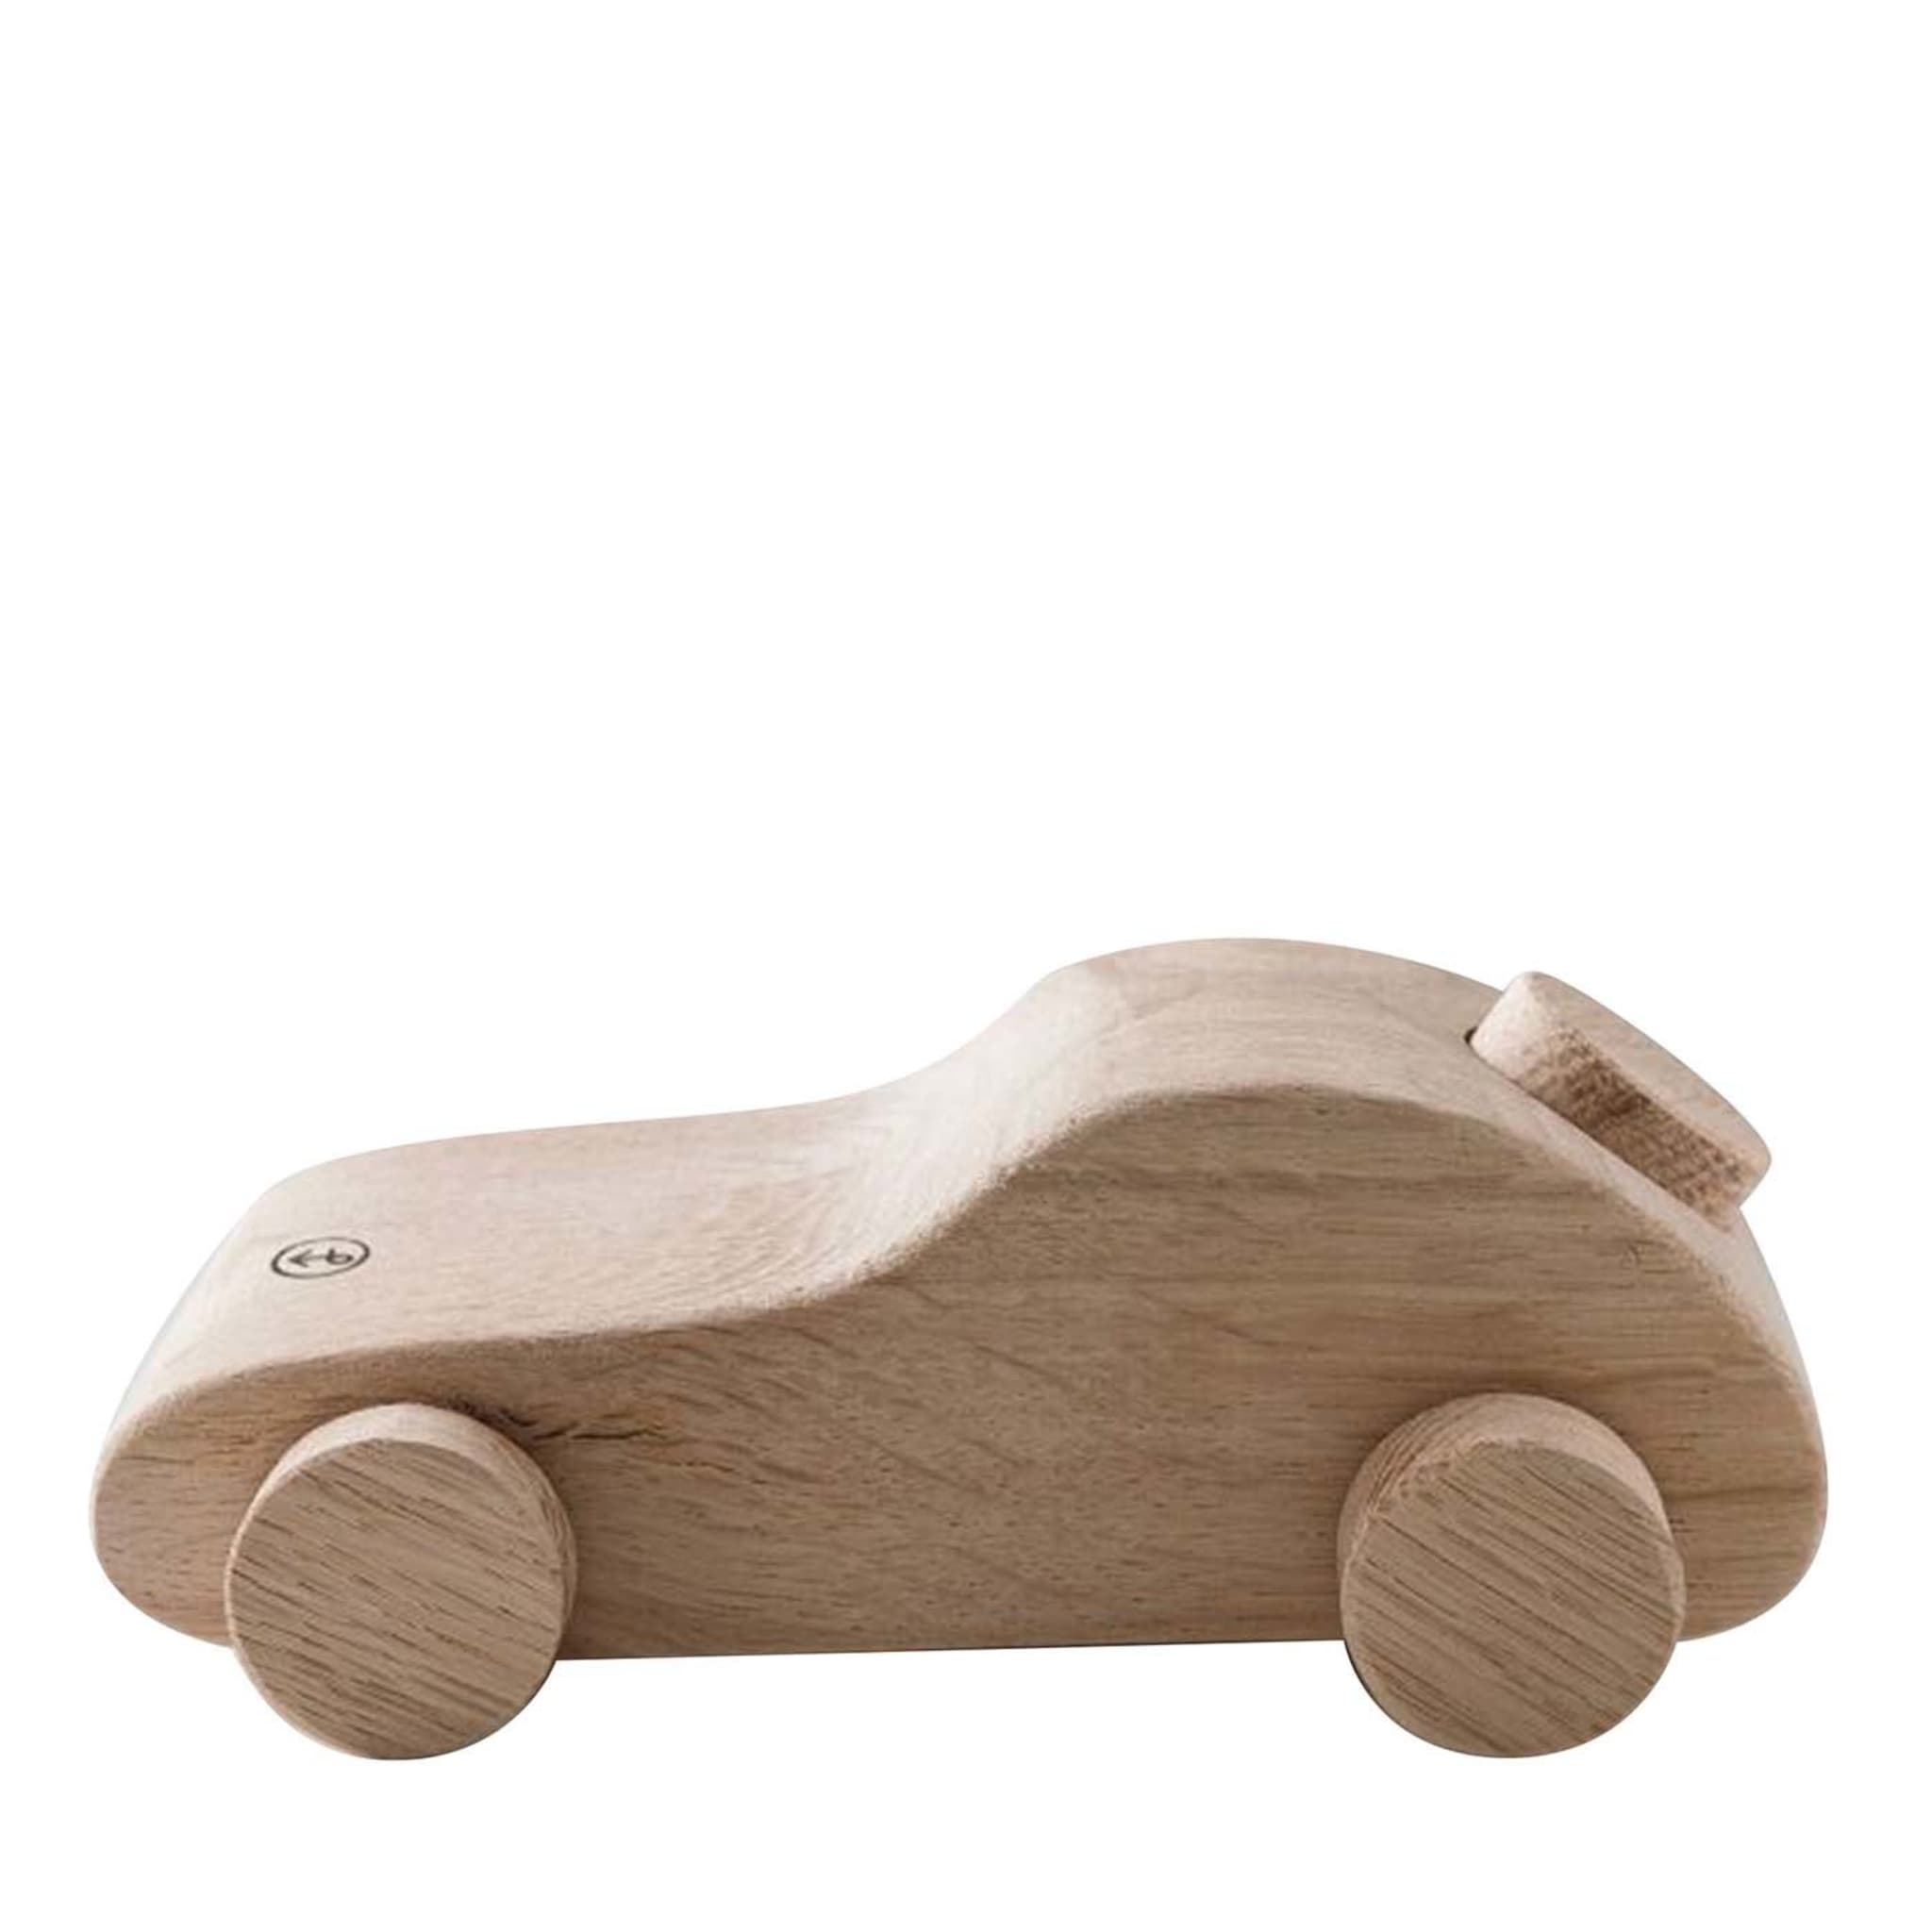 Lido Spielzeugauto Skulptur aus Holz von Matteo Ragni - 2er Set - Hauptansicht